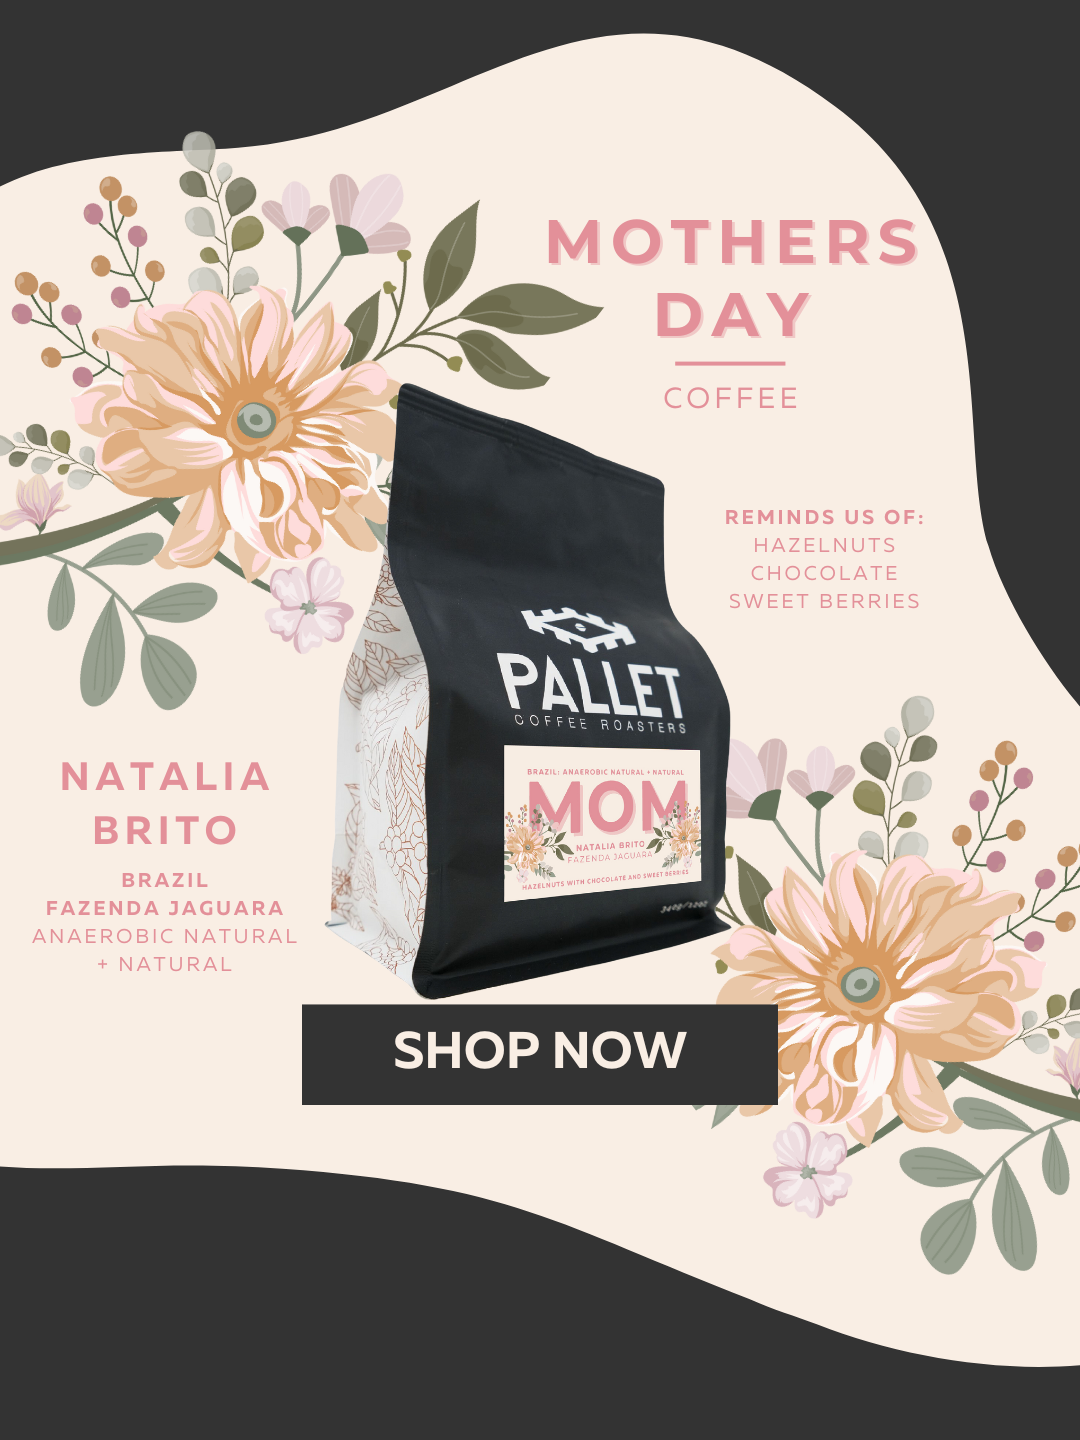 Pallet Coffee Roasters